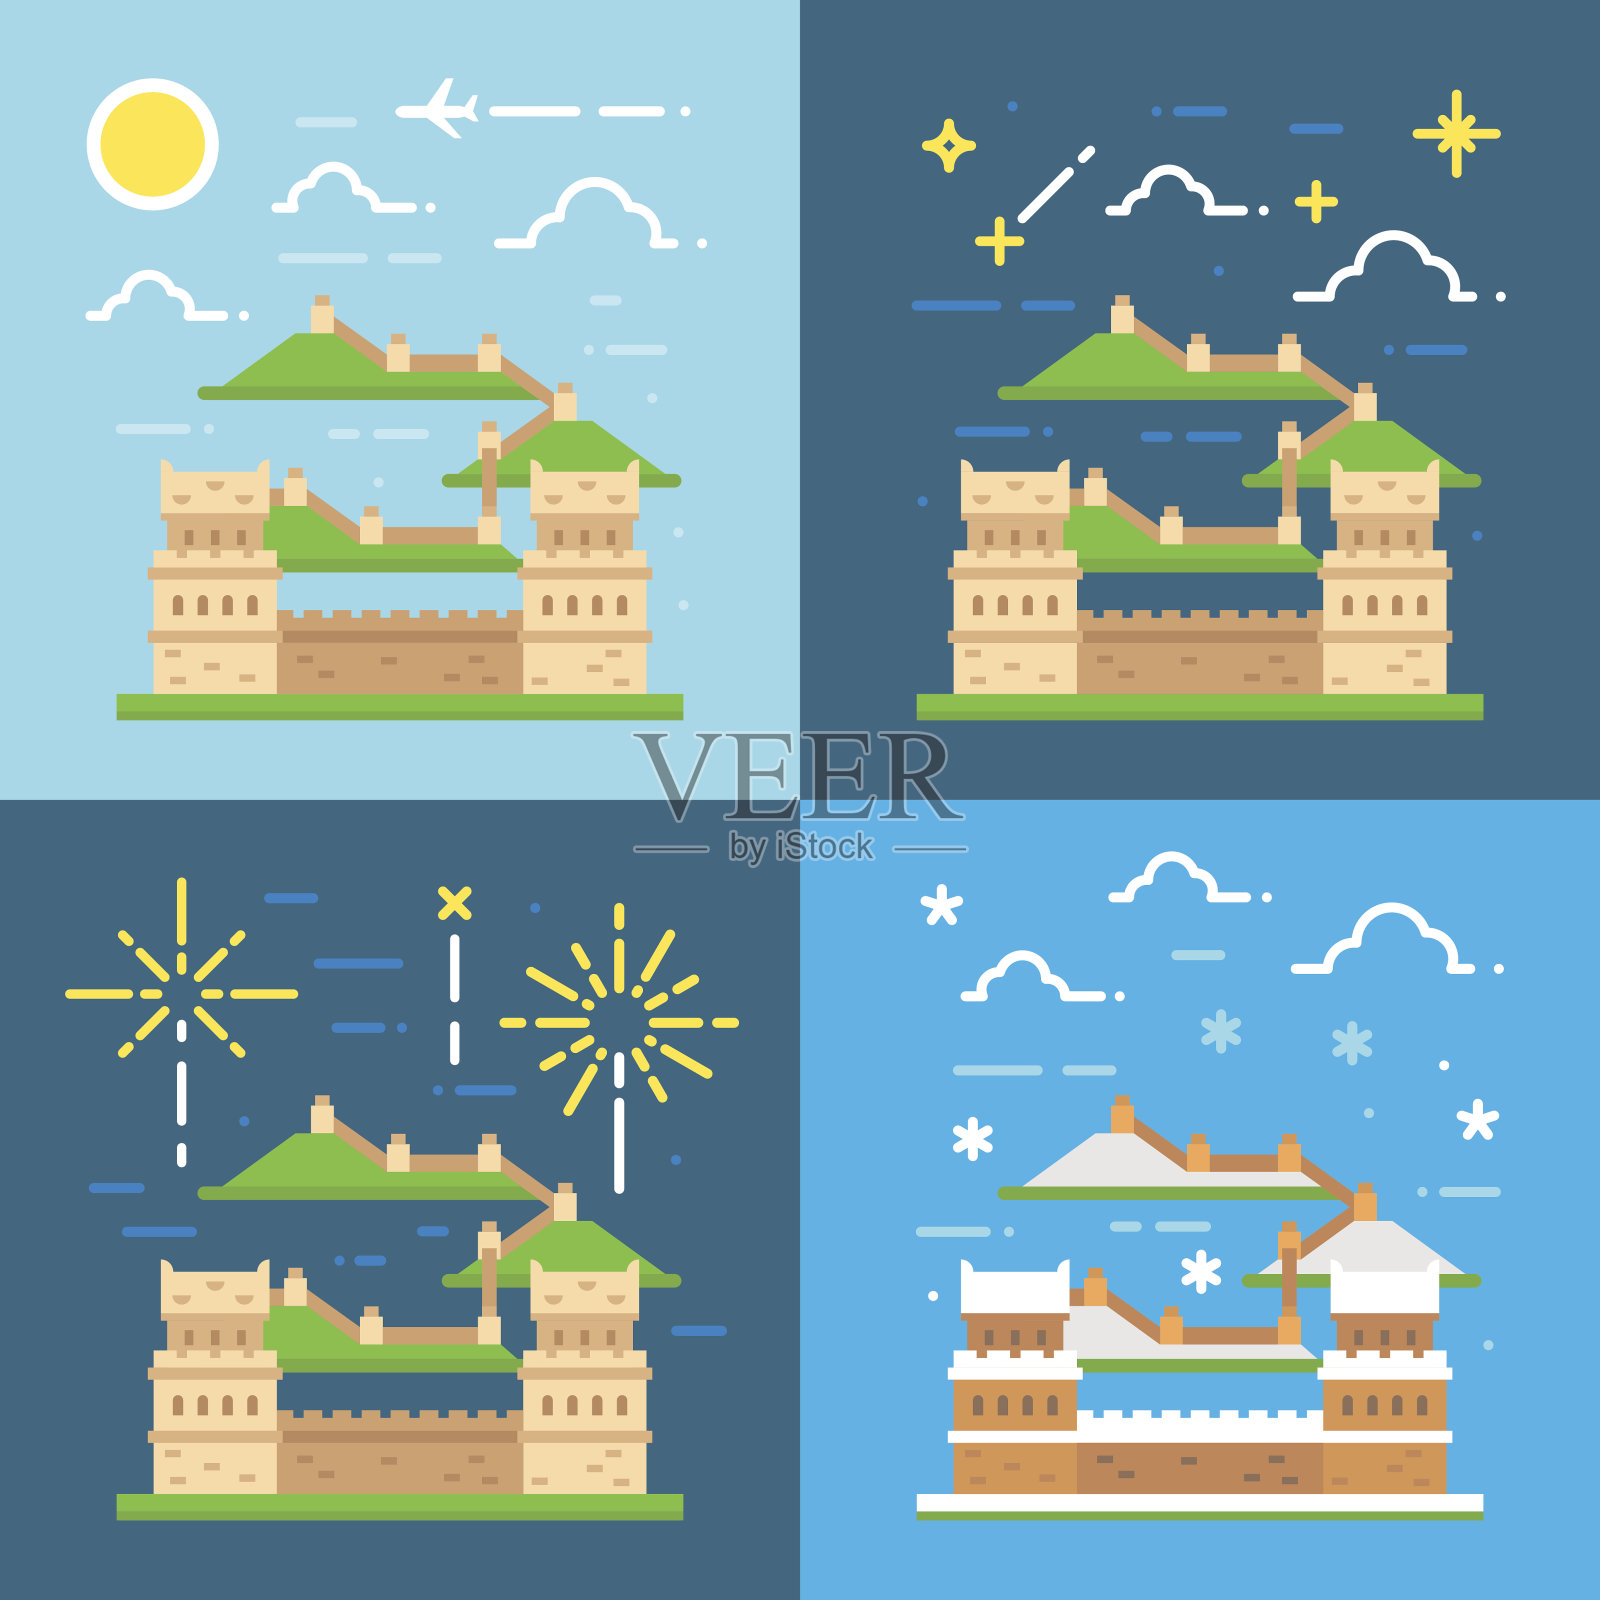 中国长城的平面设计插画图片素材